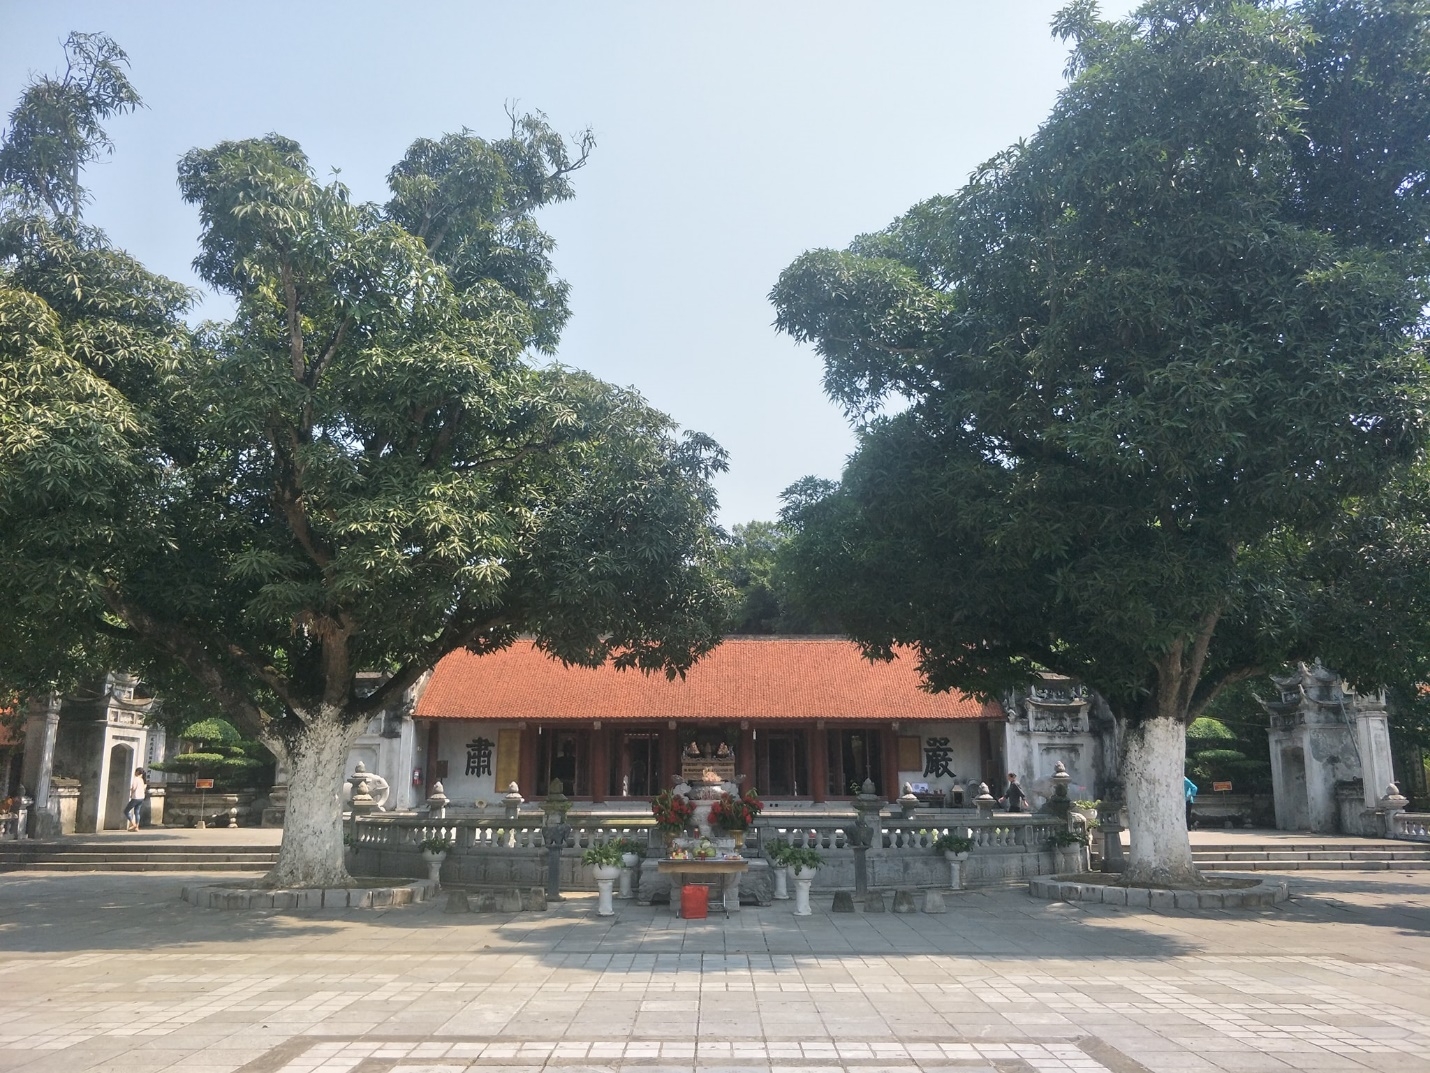 Đền thờ Hai Bà Trưng: Điểm đến du lịch hấp dẫn huyện Mê Linh